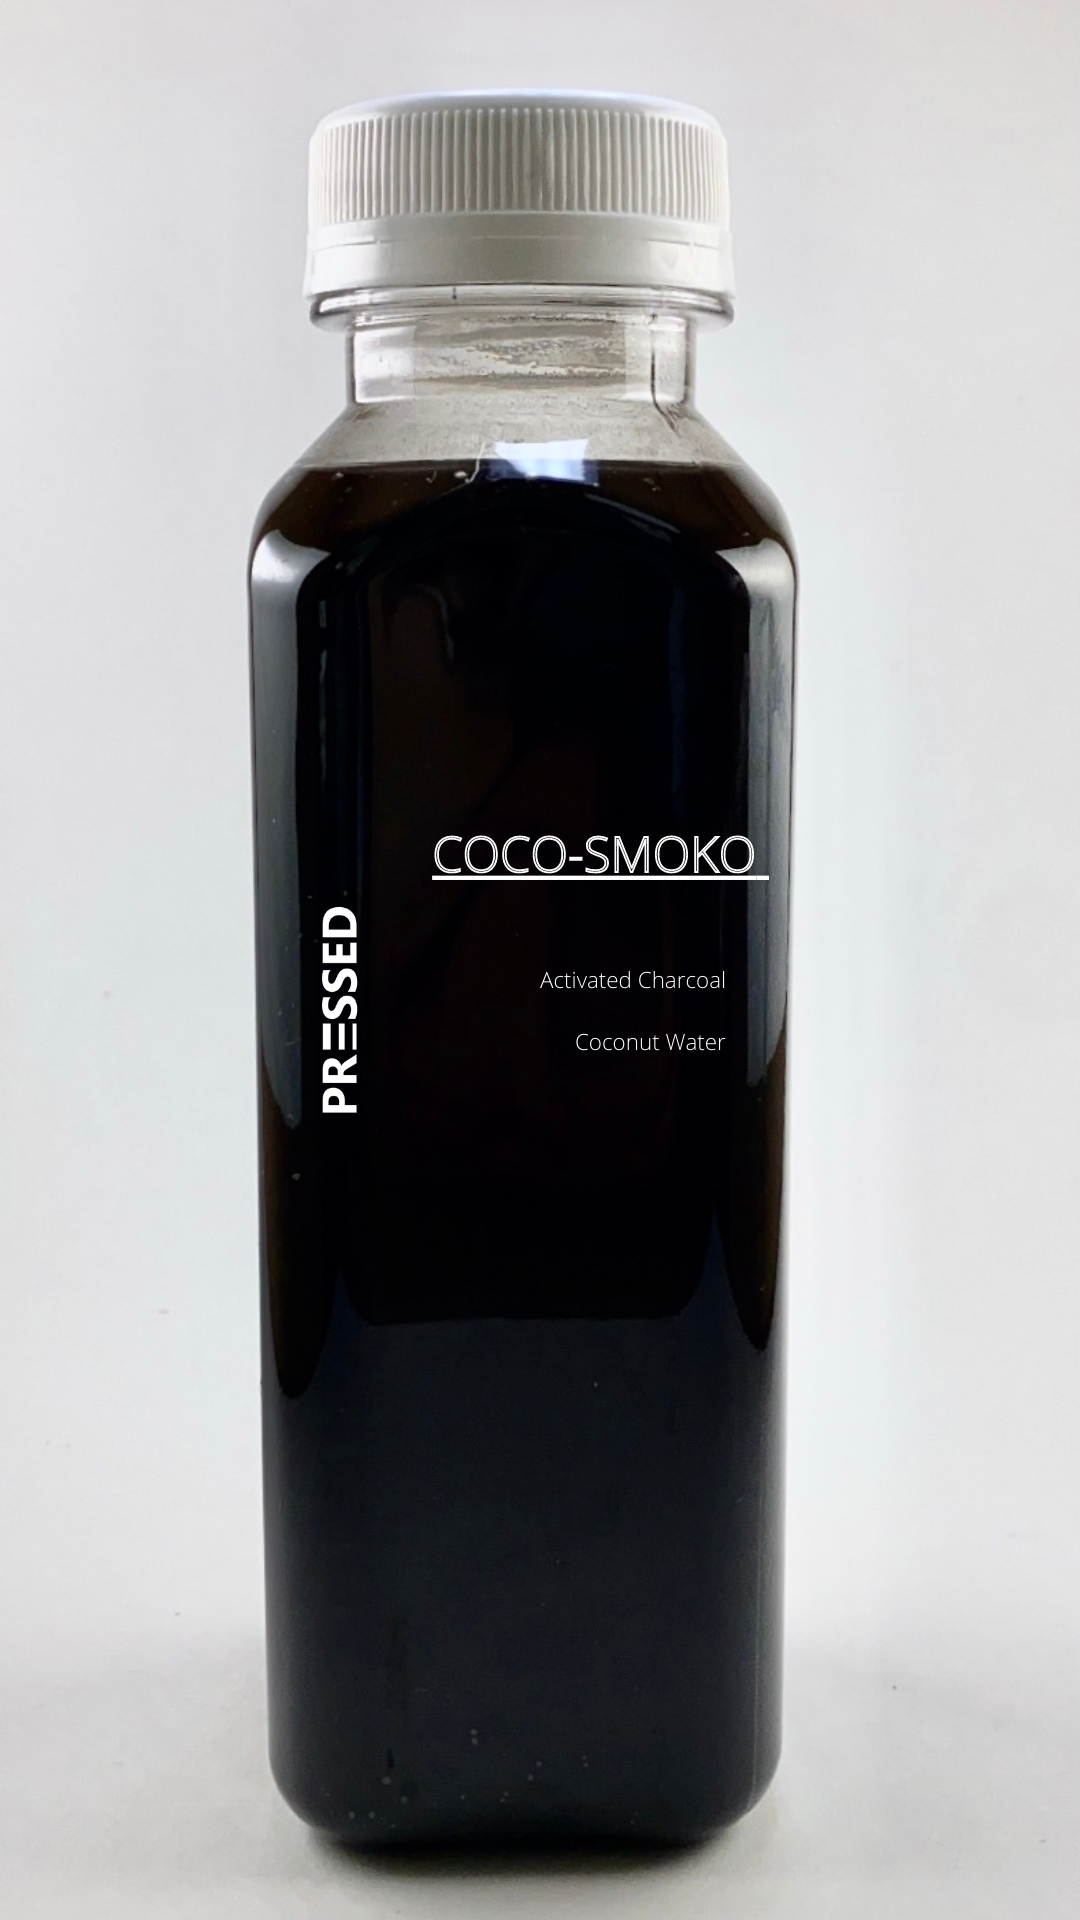 Coco-Smoko